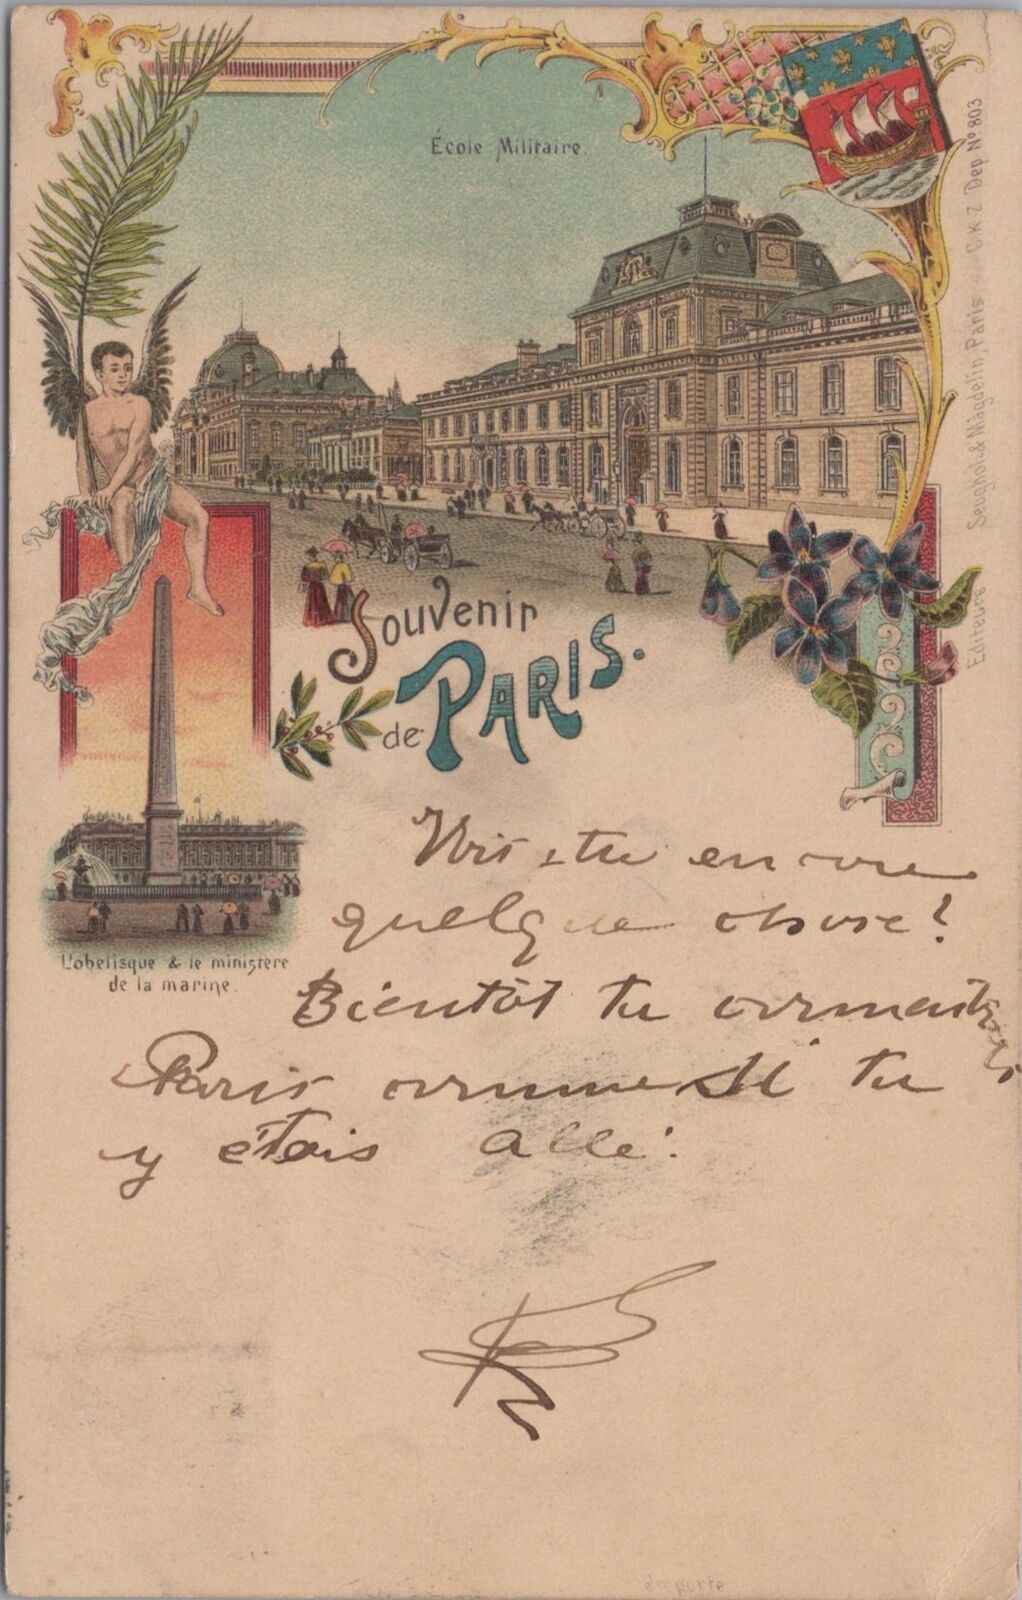 Ecole Militaire Obelisque Souvenir de Paris 1897 Postcard